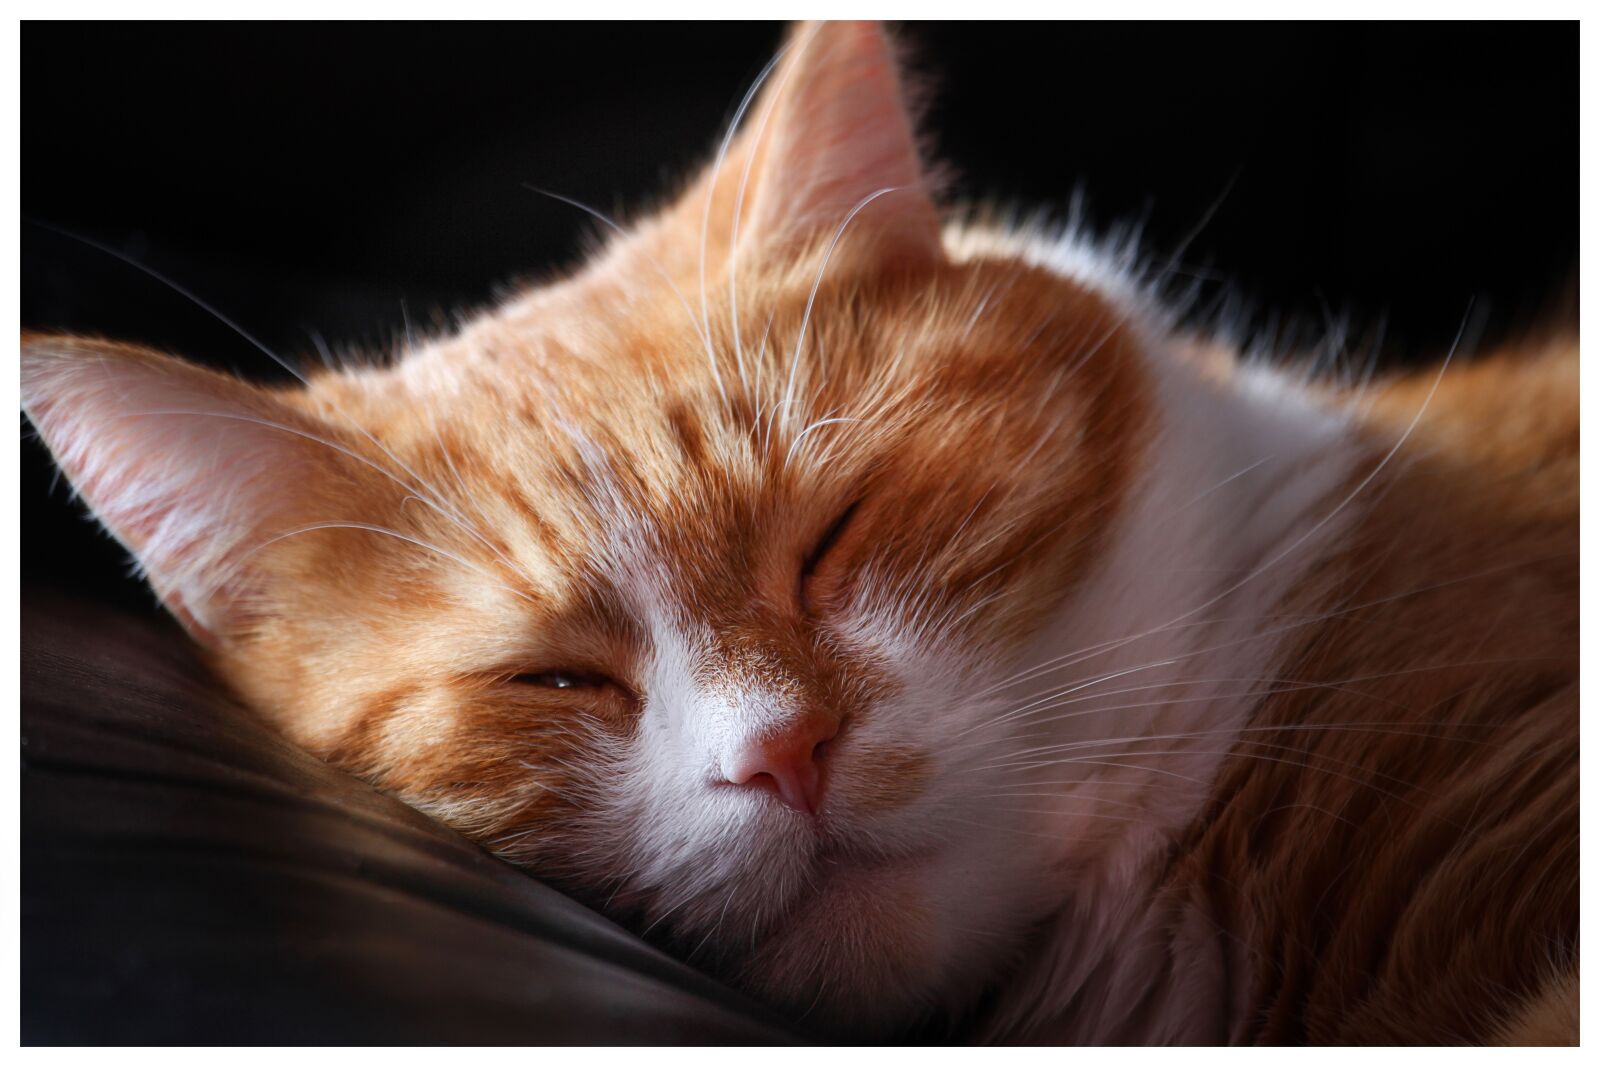 Canon EOS 7D sample photo. Cat, sleeps, dream photography